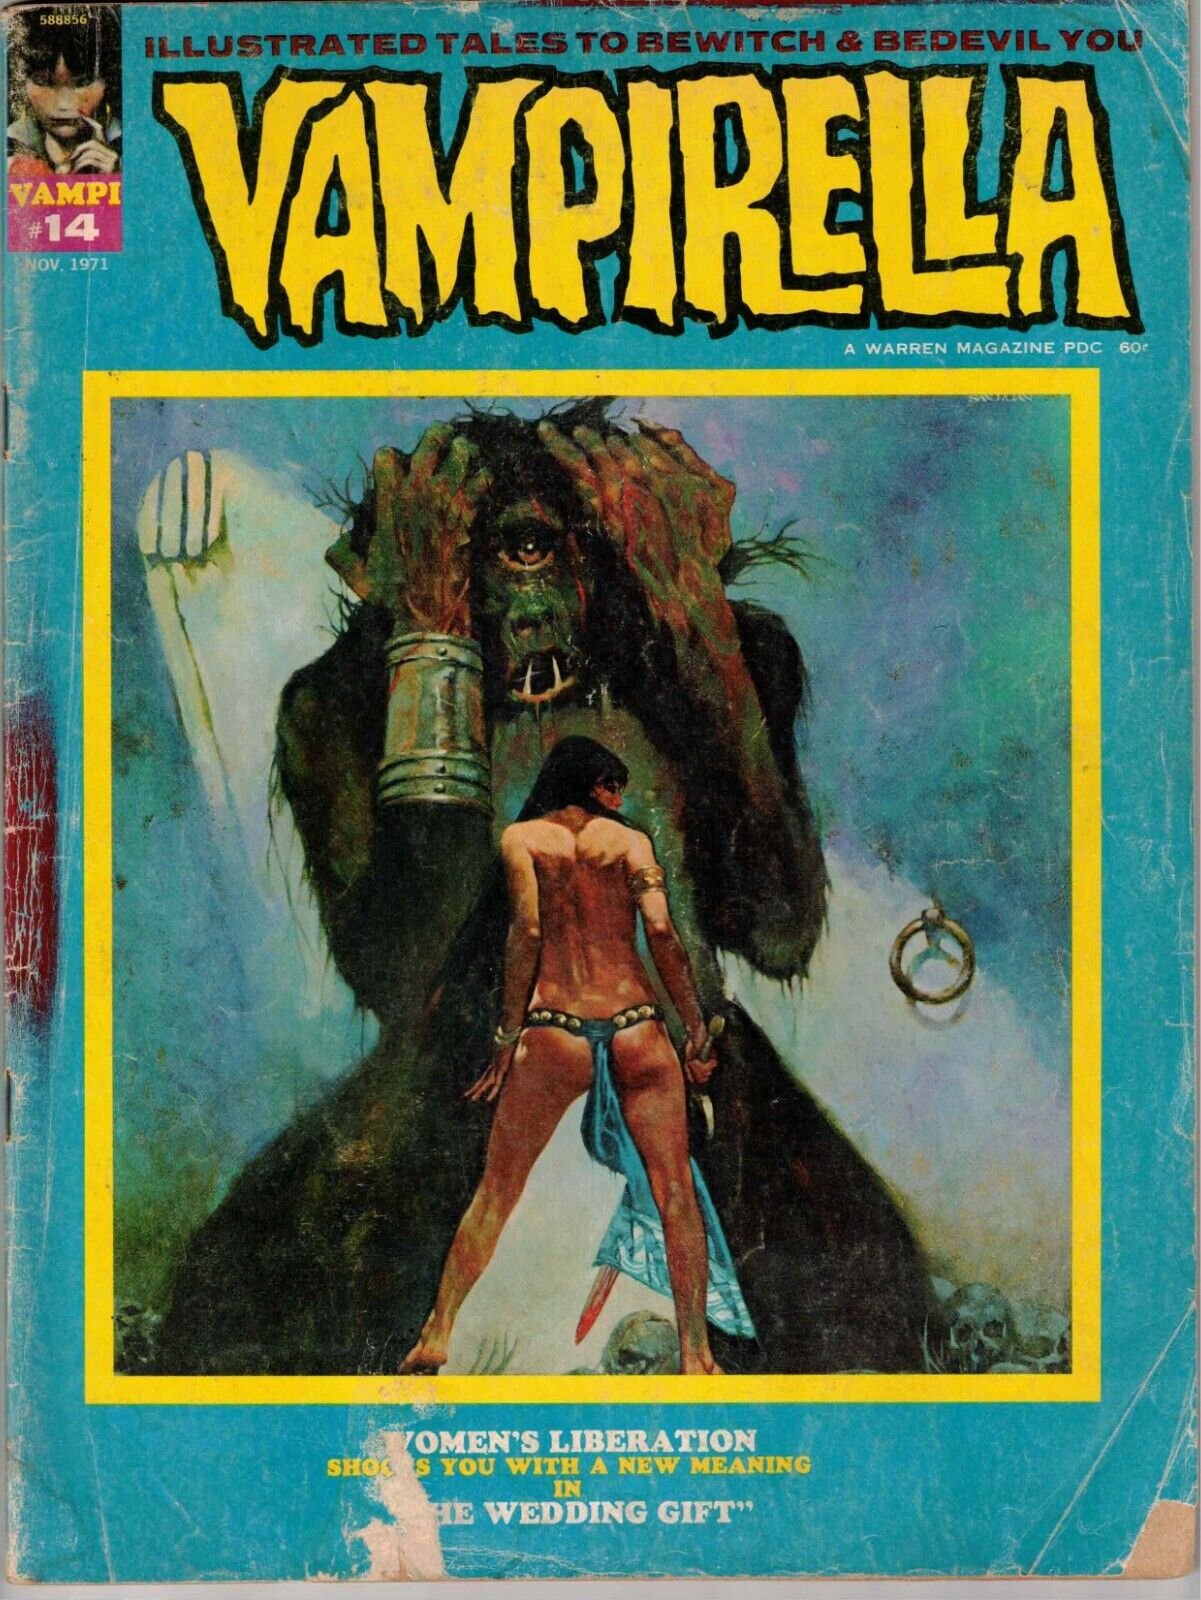 VAMPIRELLA (WARREN MAGAZINE) #14 1971 BRONZE AGE READER